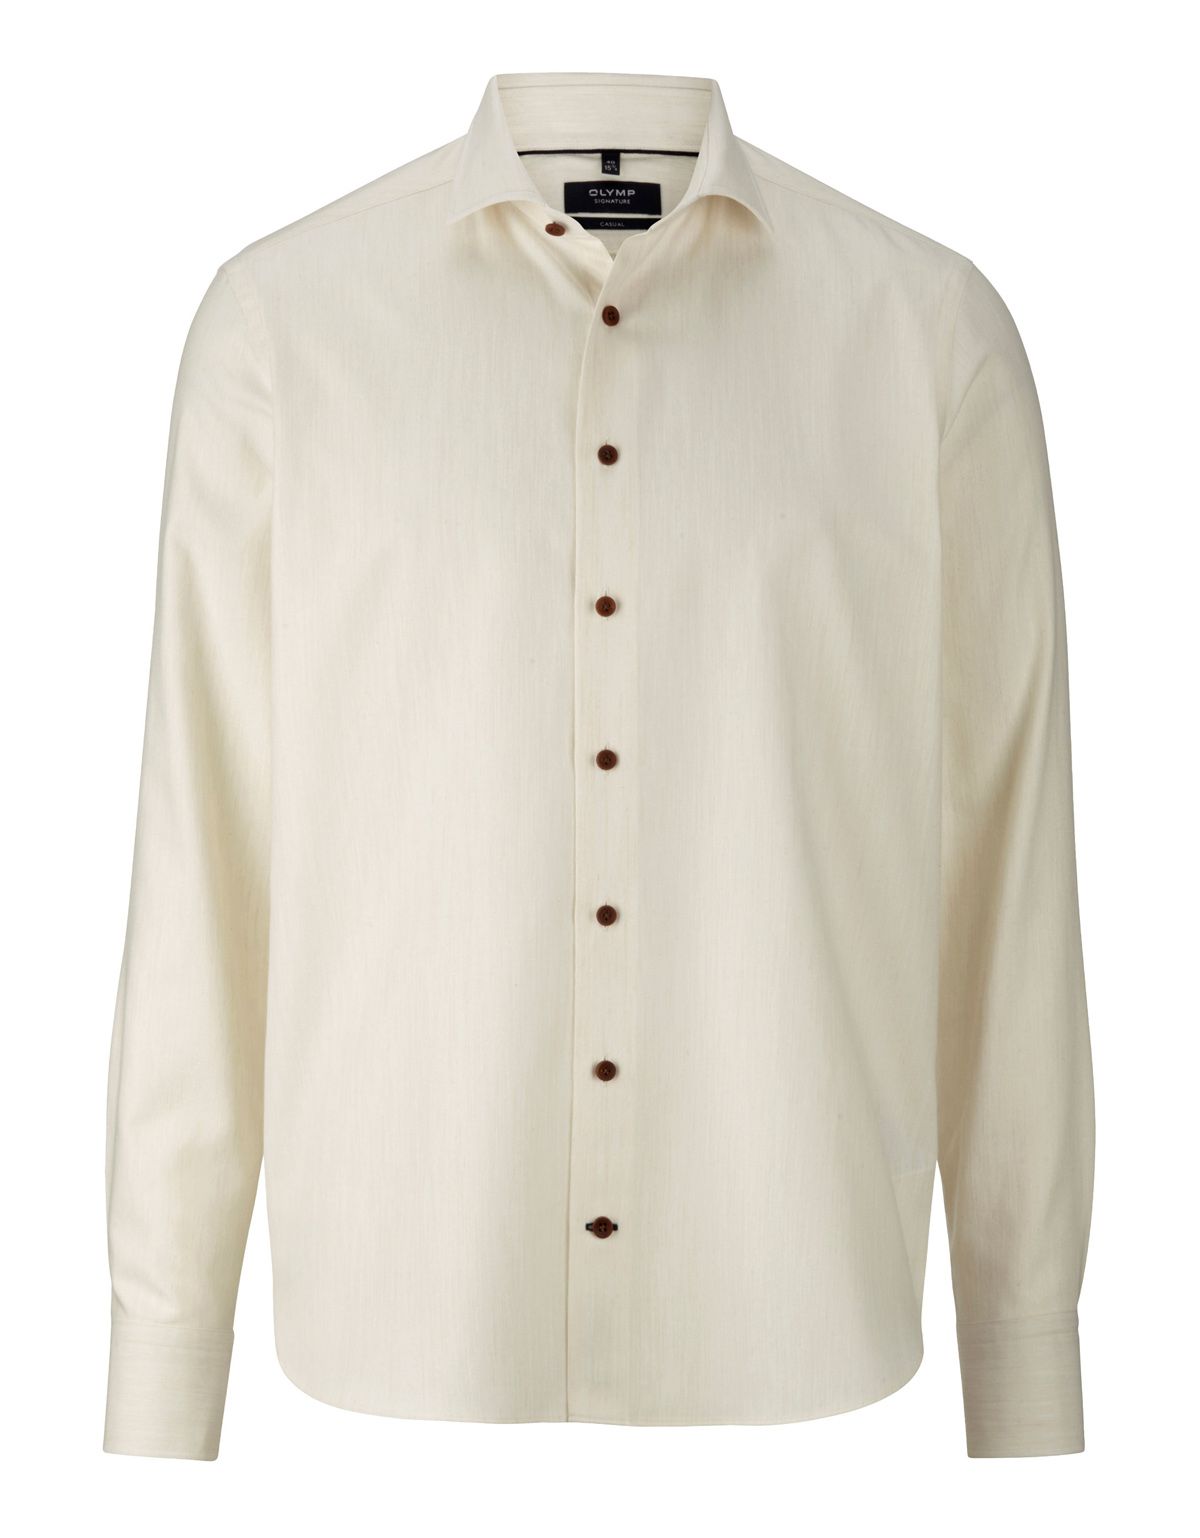 Рубашка фланелевая мужская Signature с кашемиром[Белый]